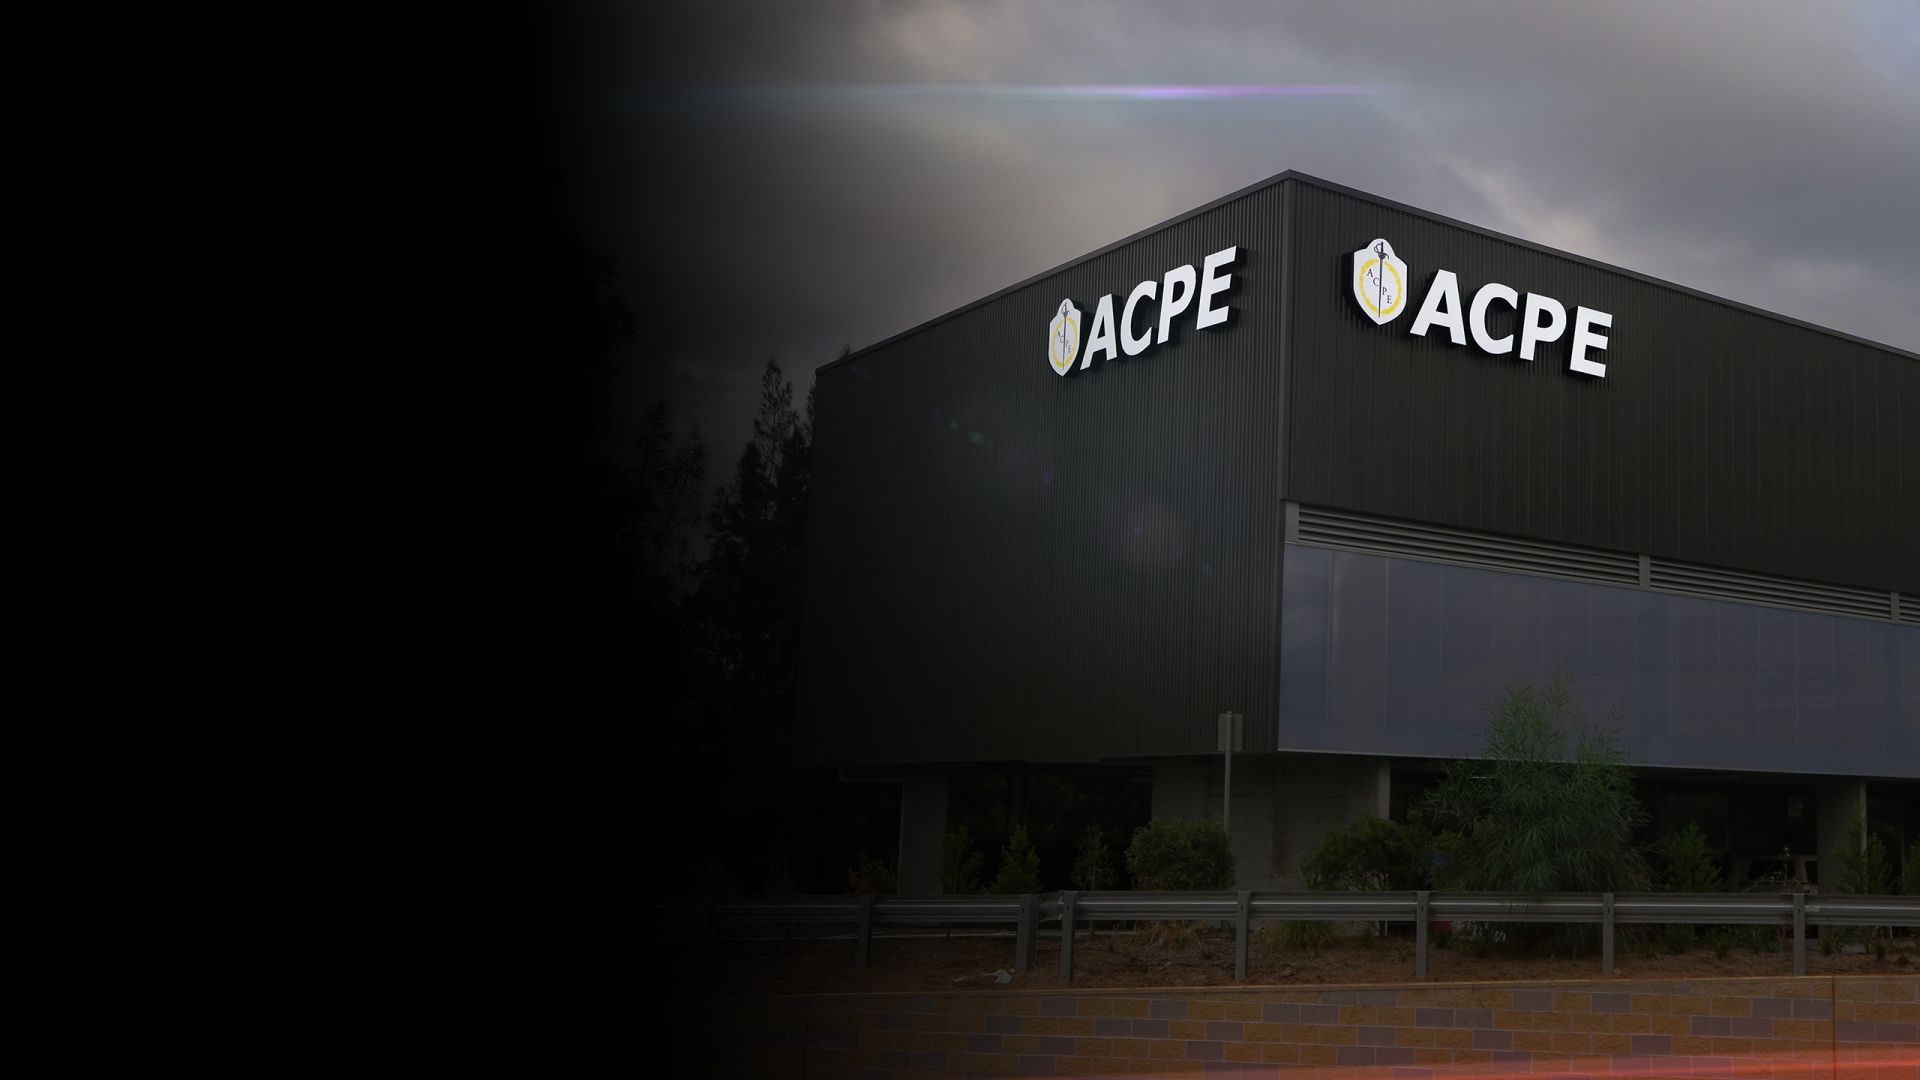 ACPE illuminated building signage